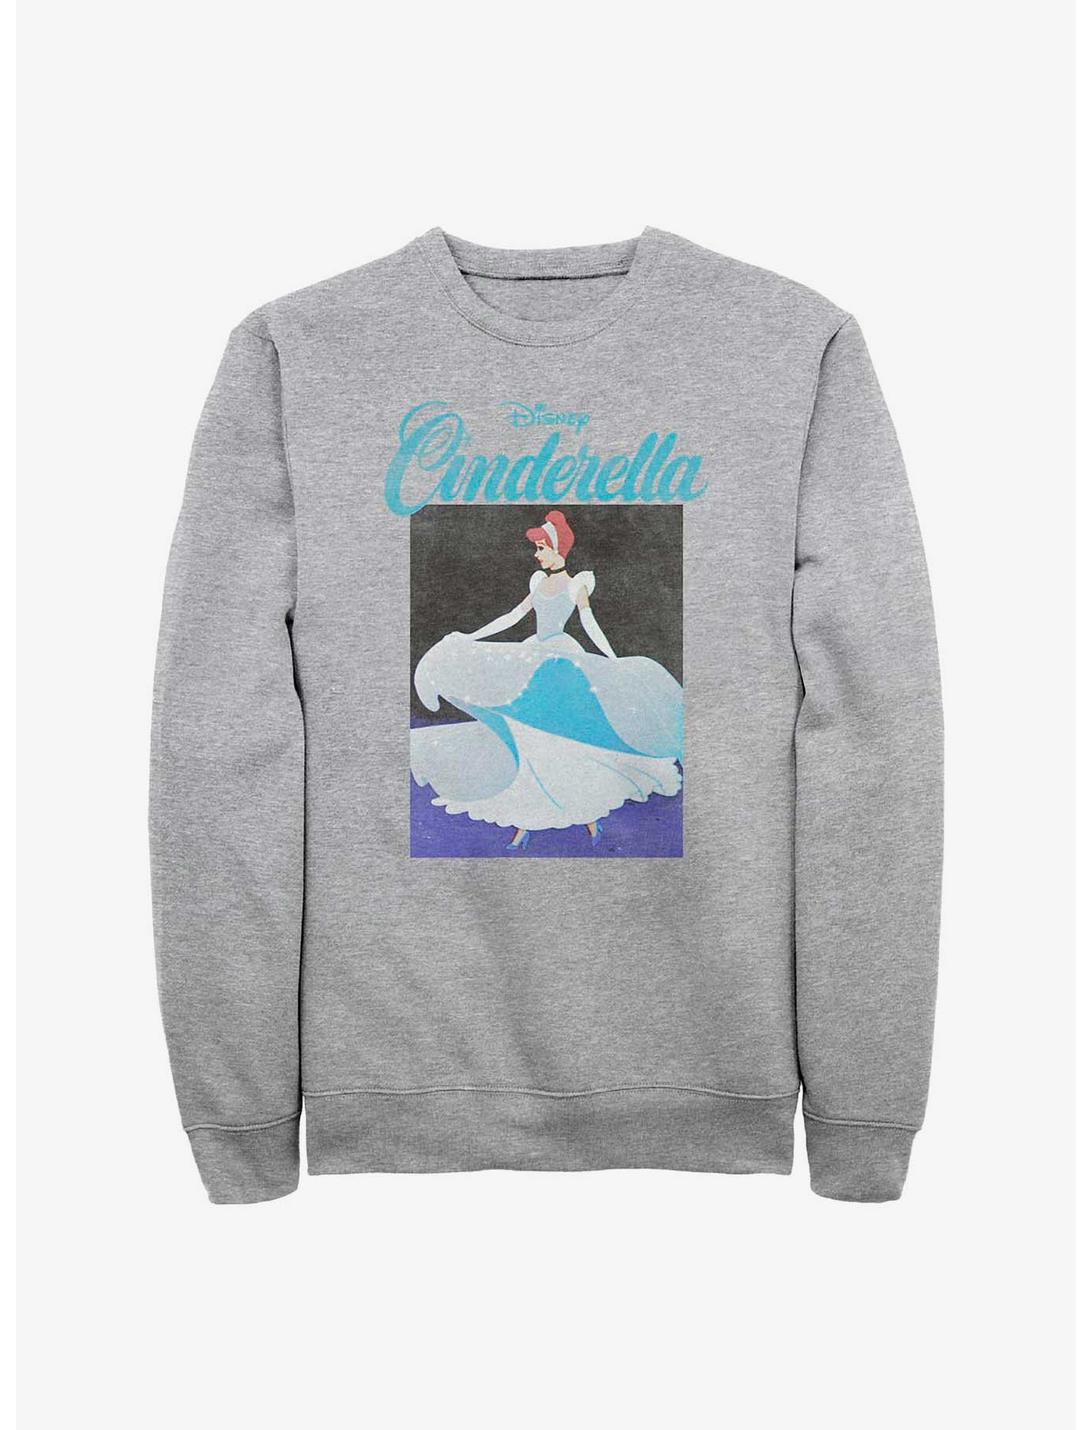 Disney Cinderella Cindy Squared Sweatshirt, ATH HTR, hi-res